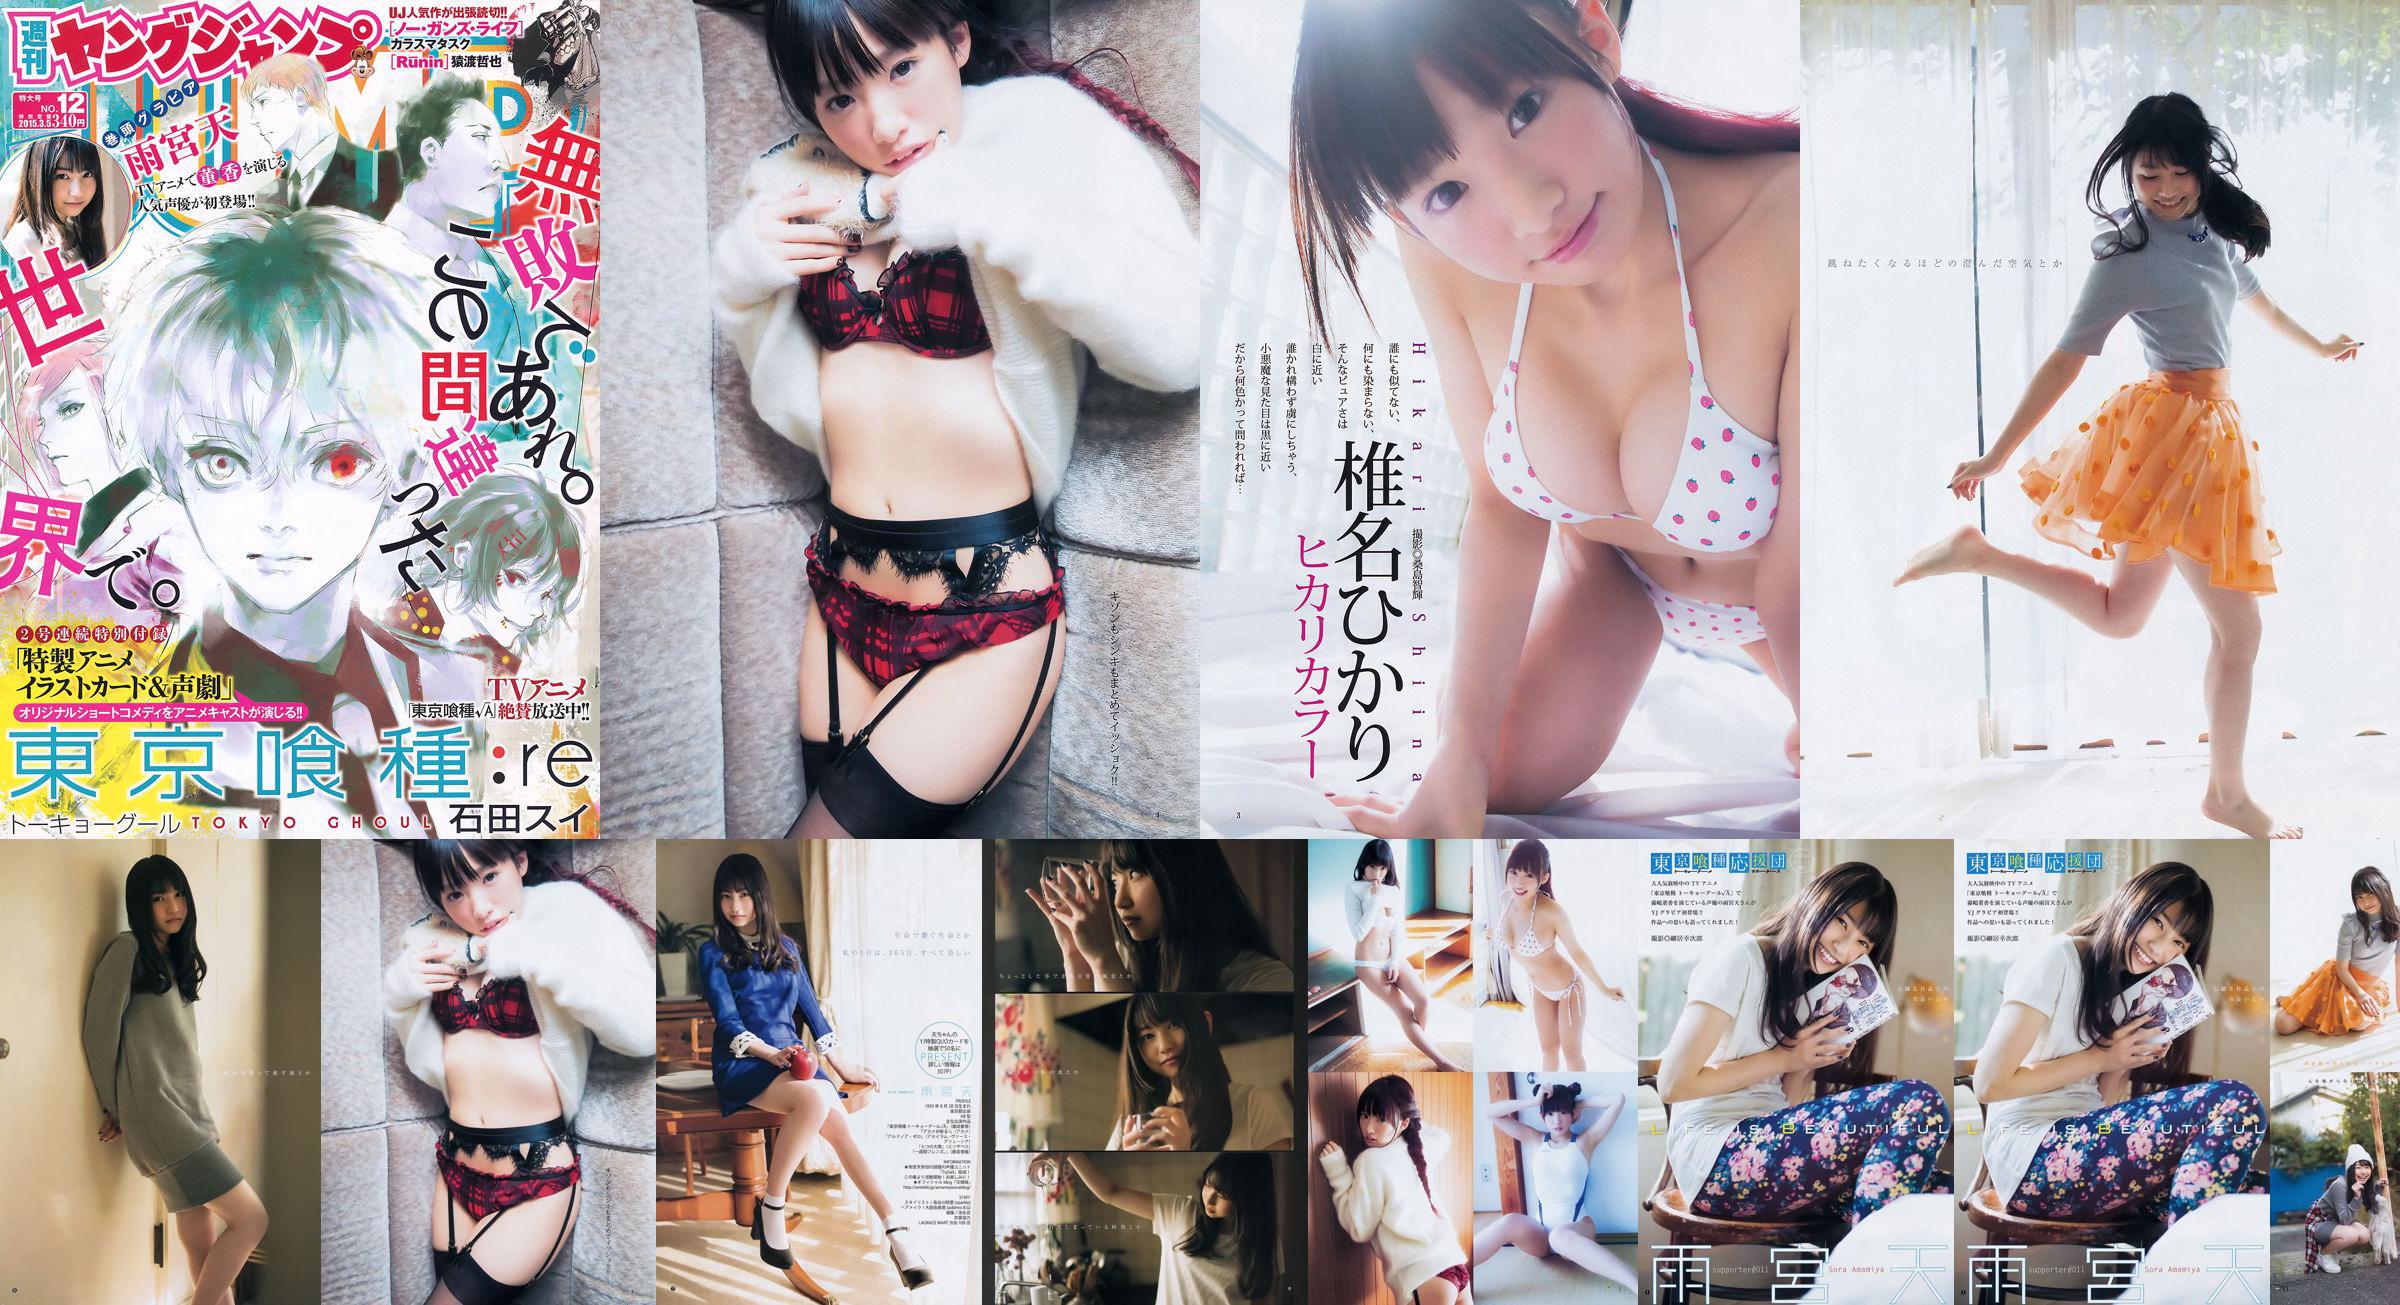 Amamiya Tian Shiina ひかり [Weekly Young Jump] 2015 No.12 Photo Magazine No.ec32b2 Pagina 2